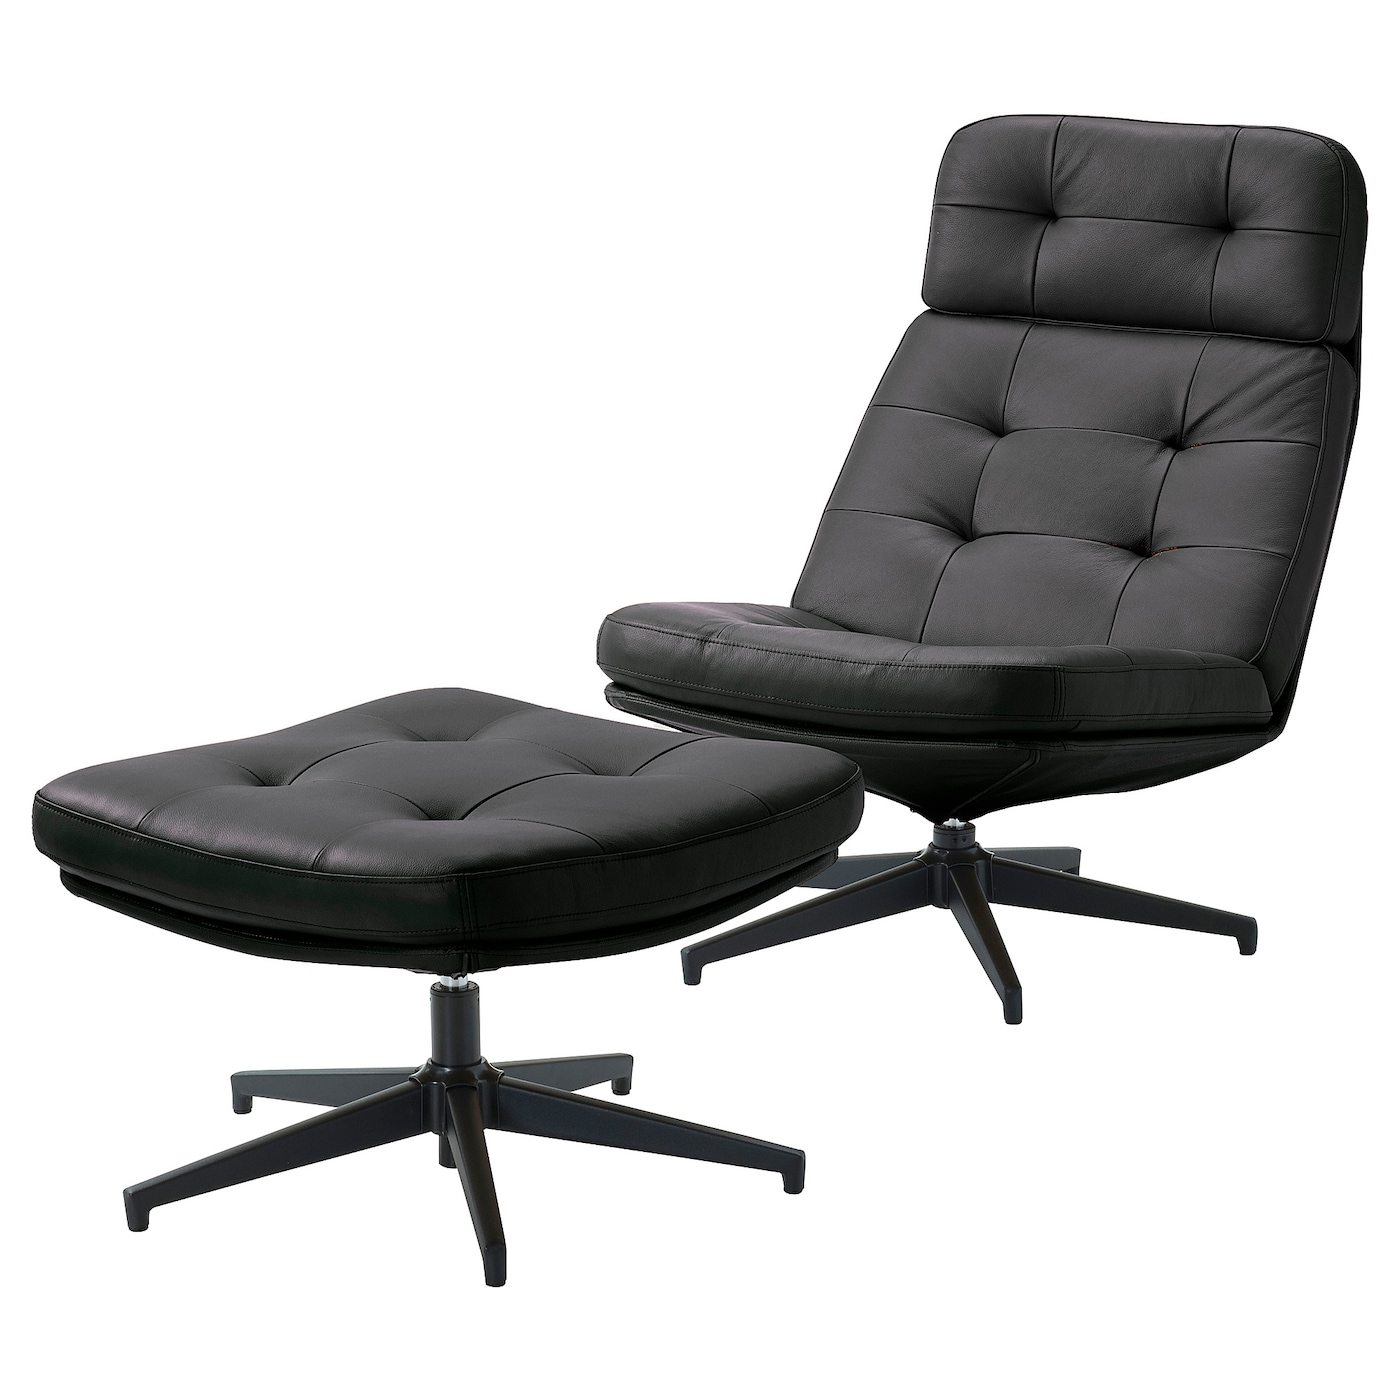 ХАВБЕРГ Кресло и подставка для ног, Гранн/Бомстад черный HAVBERG IKEA компьютерное кресло gy офисное кресло студенческое учебное кресло подъемное небольшое вращающееся кресло удобное длинное сидение прост